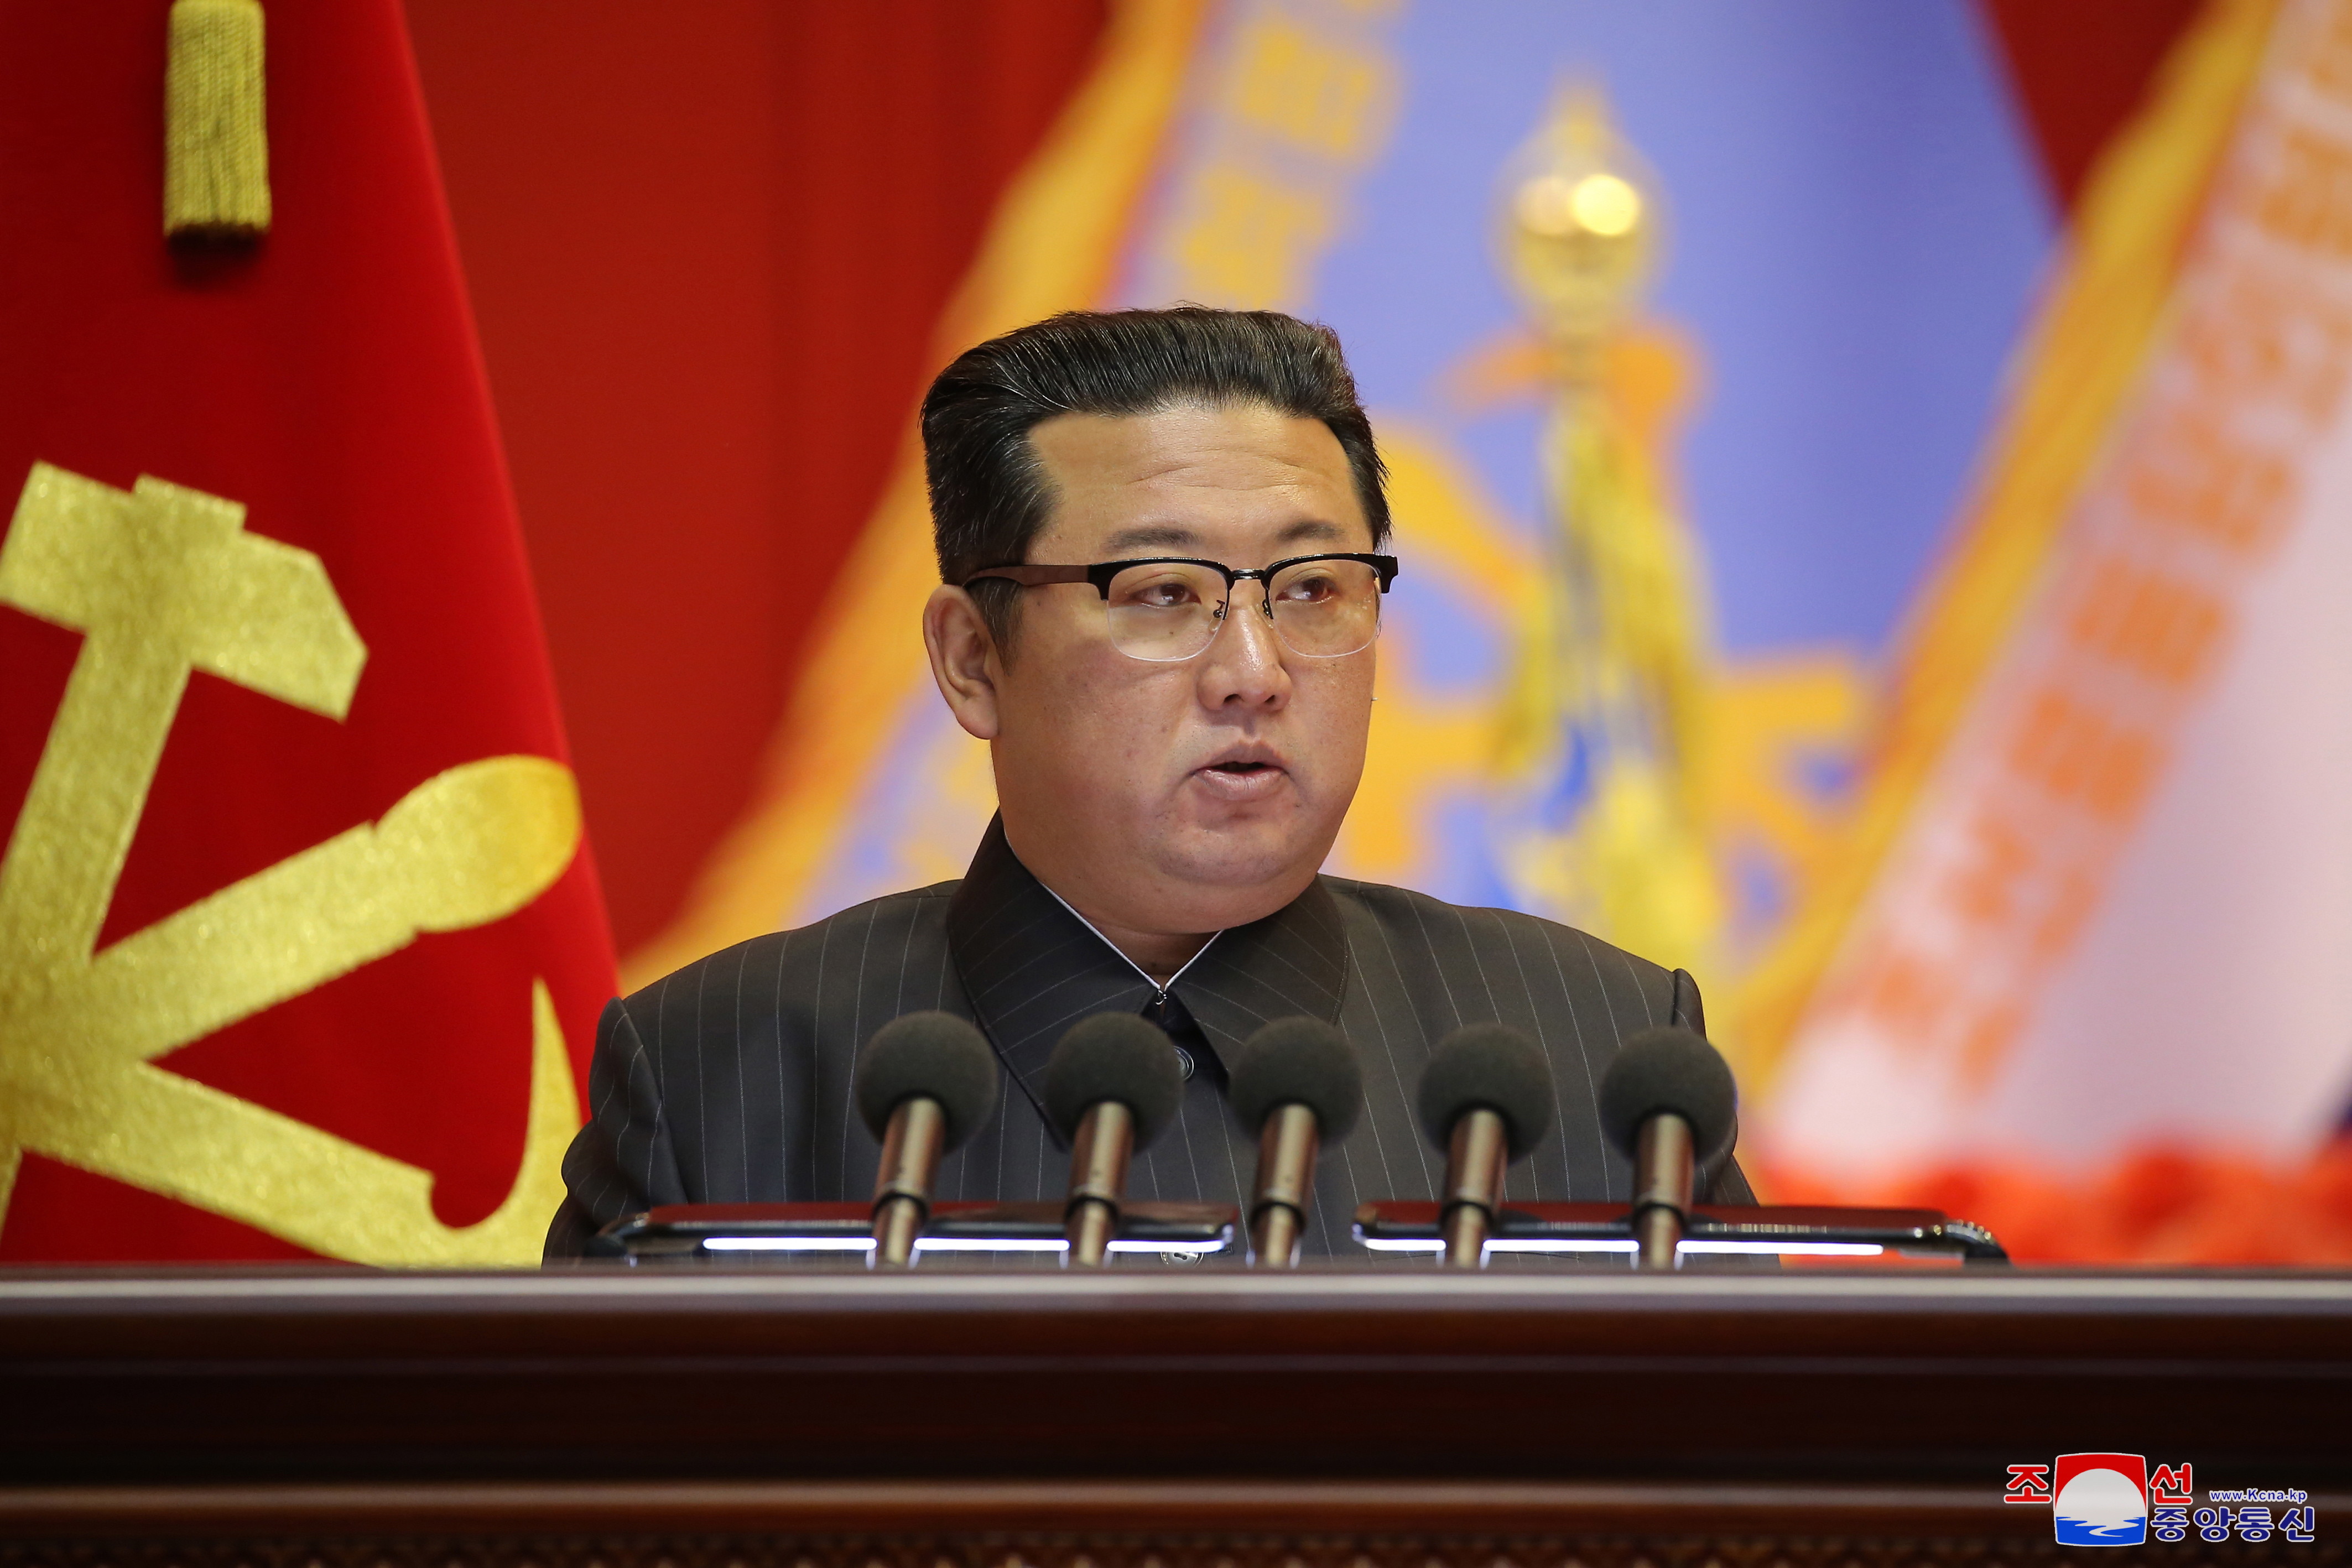 FOTO. Cum arată acum Kim Jong Un. Liderul nord-coreean a slăbit semnificativ